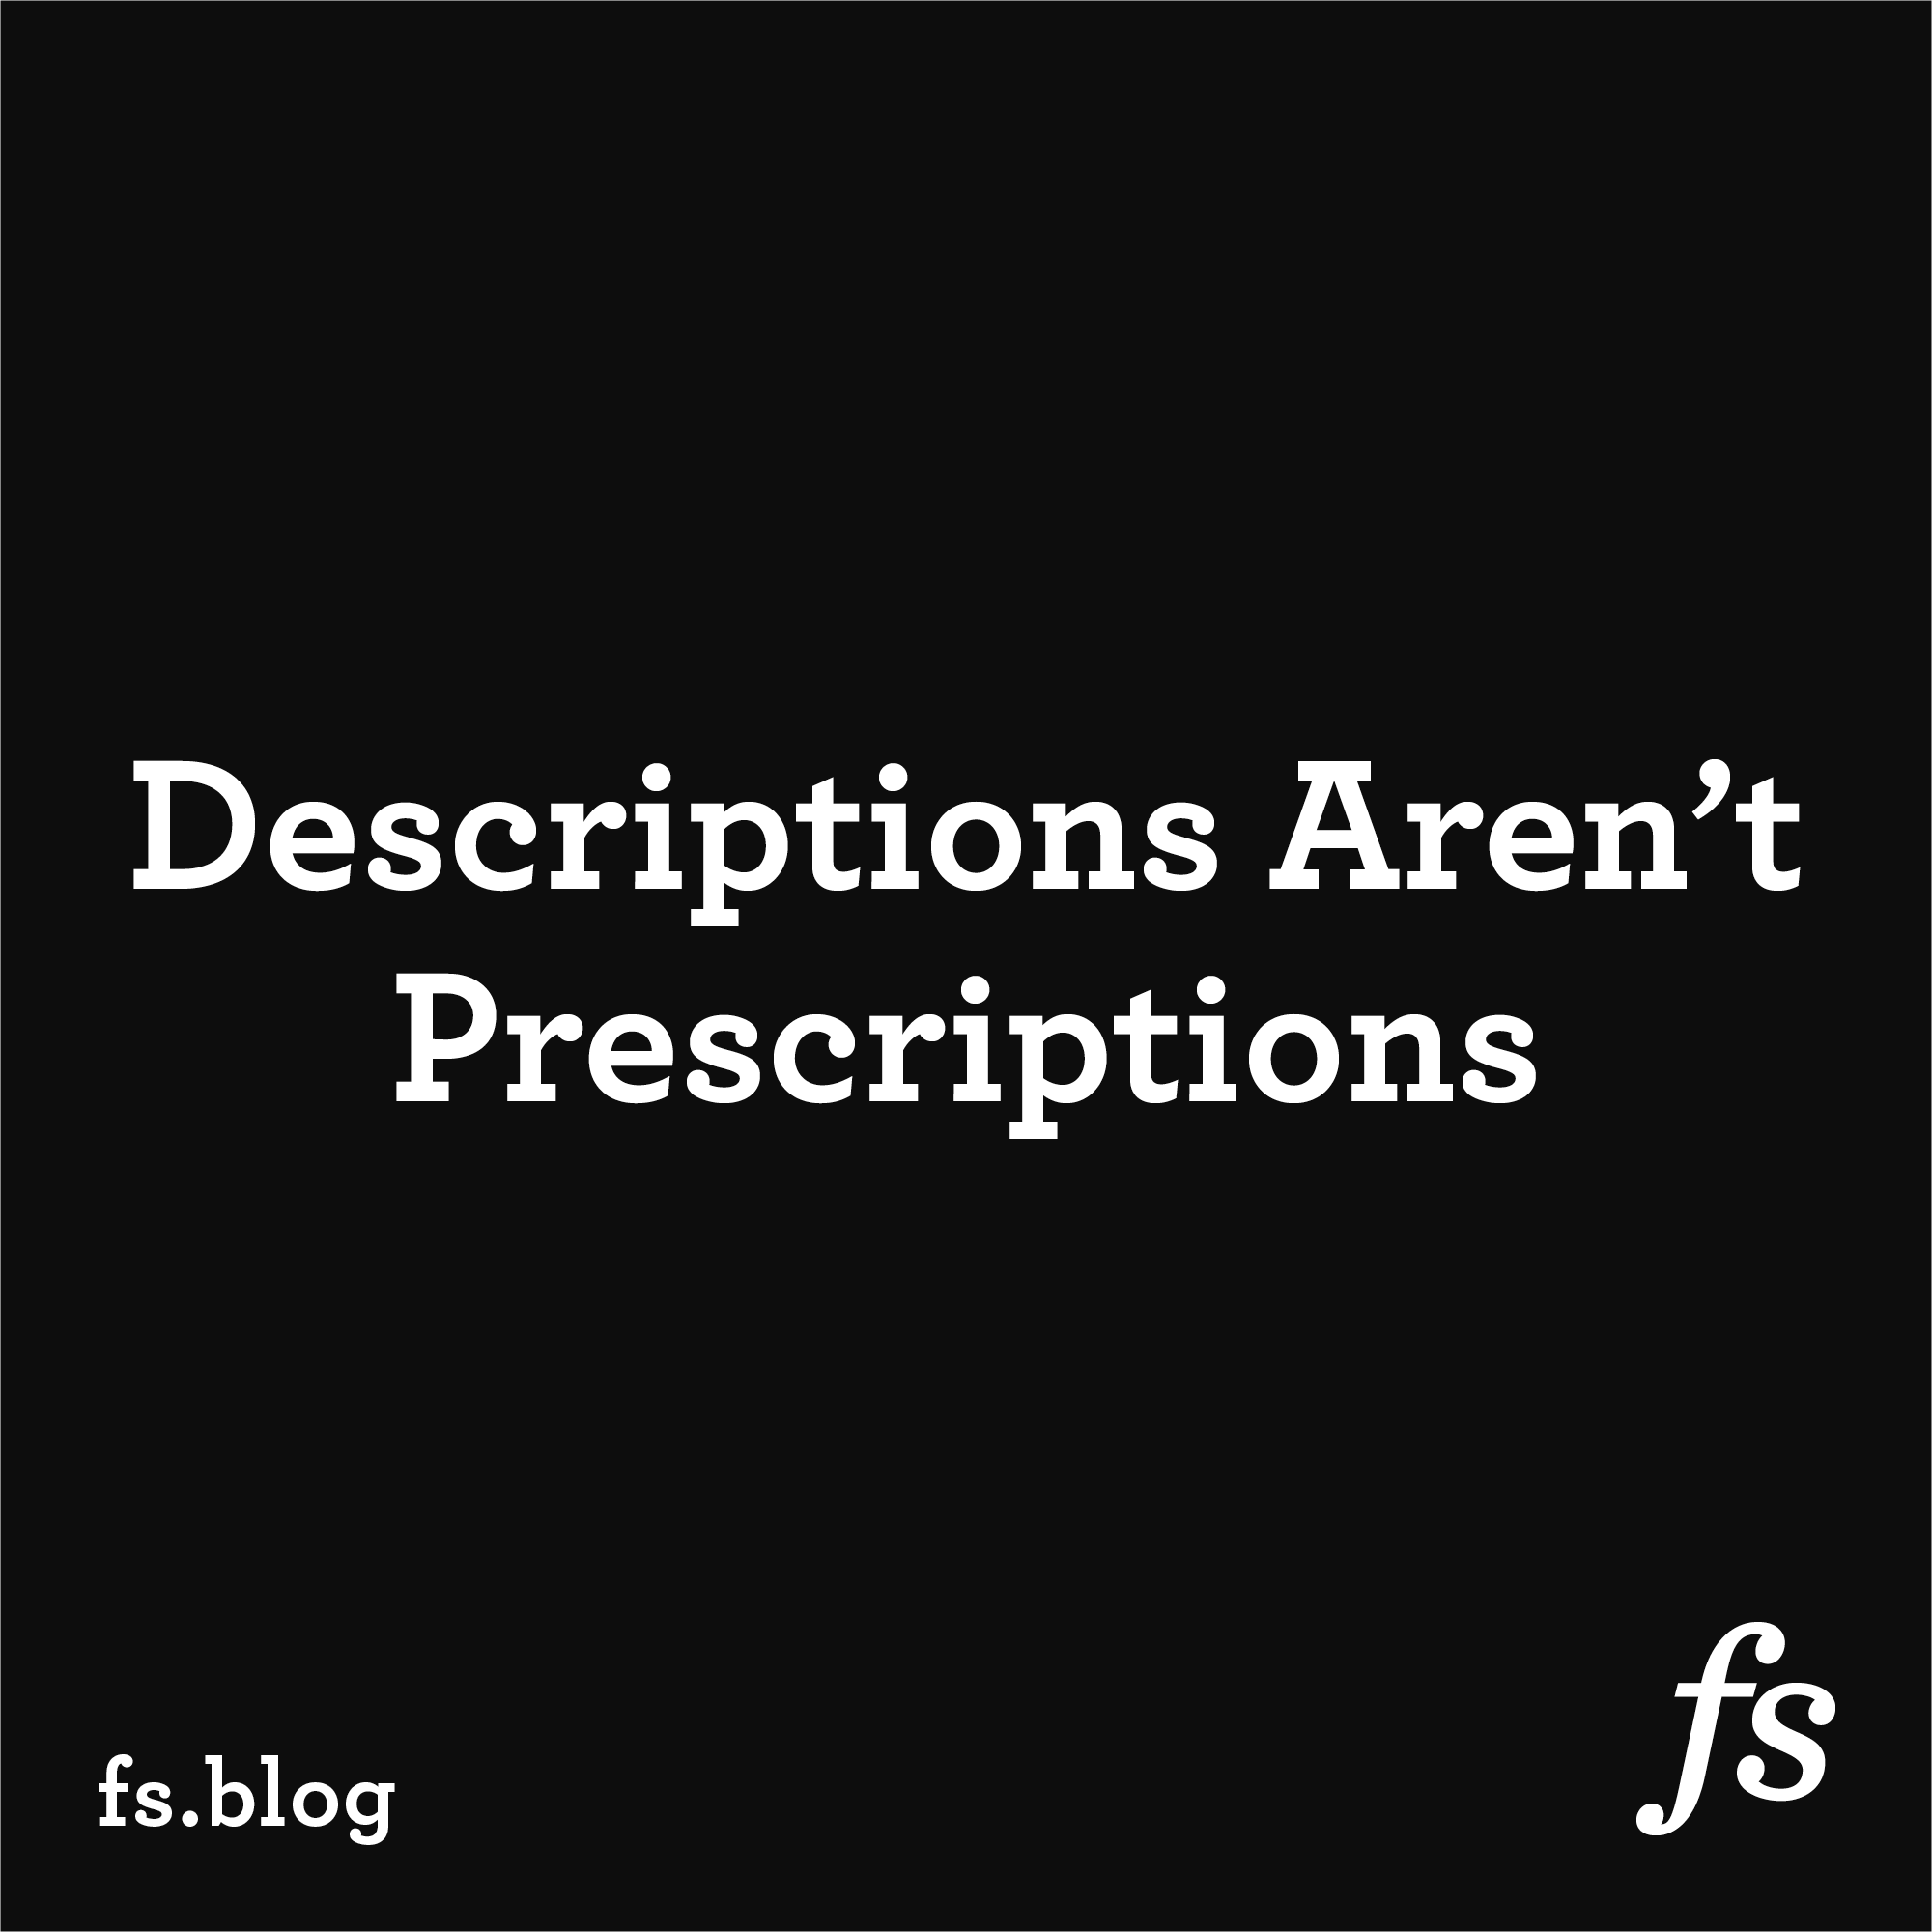 Descriptions Aren’t Prescriptions